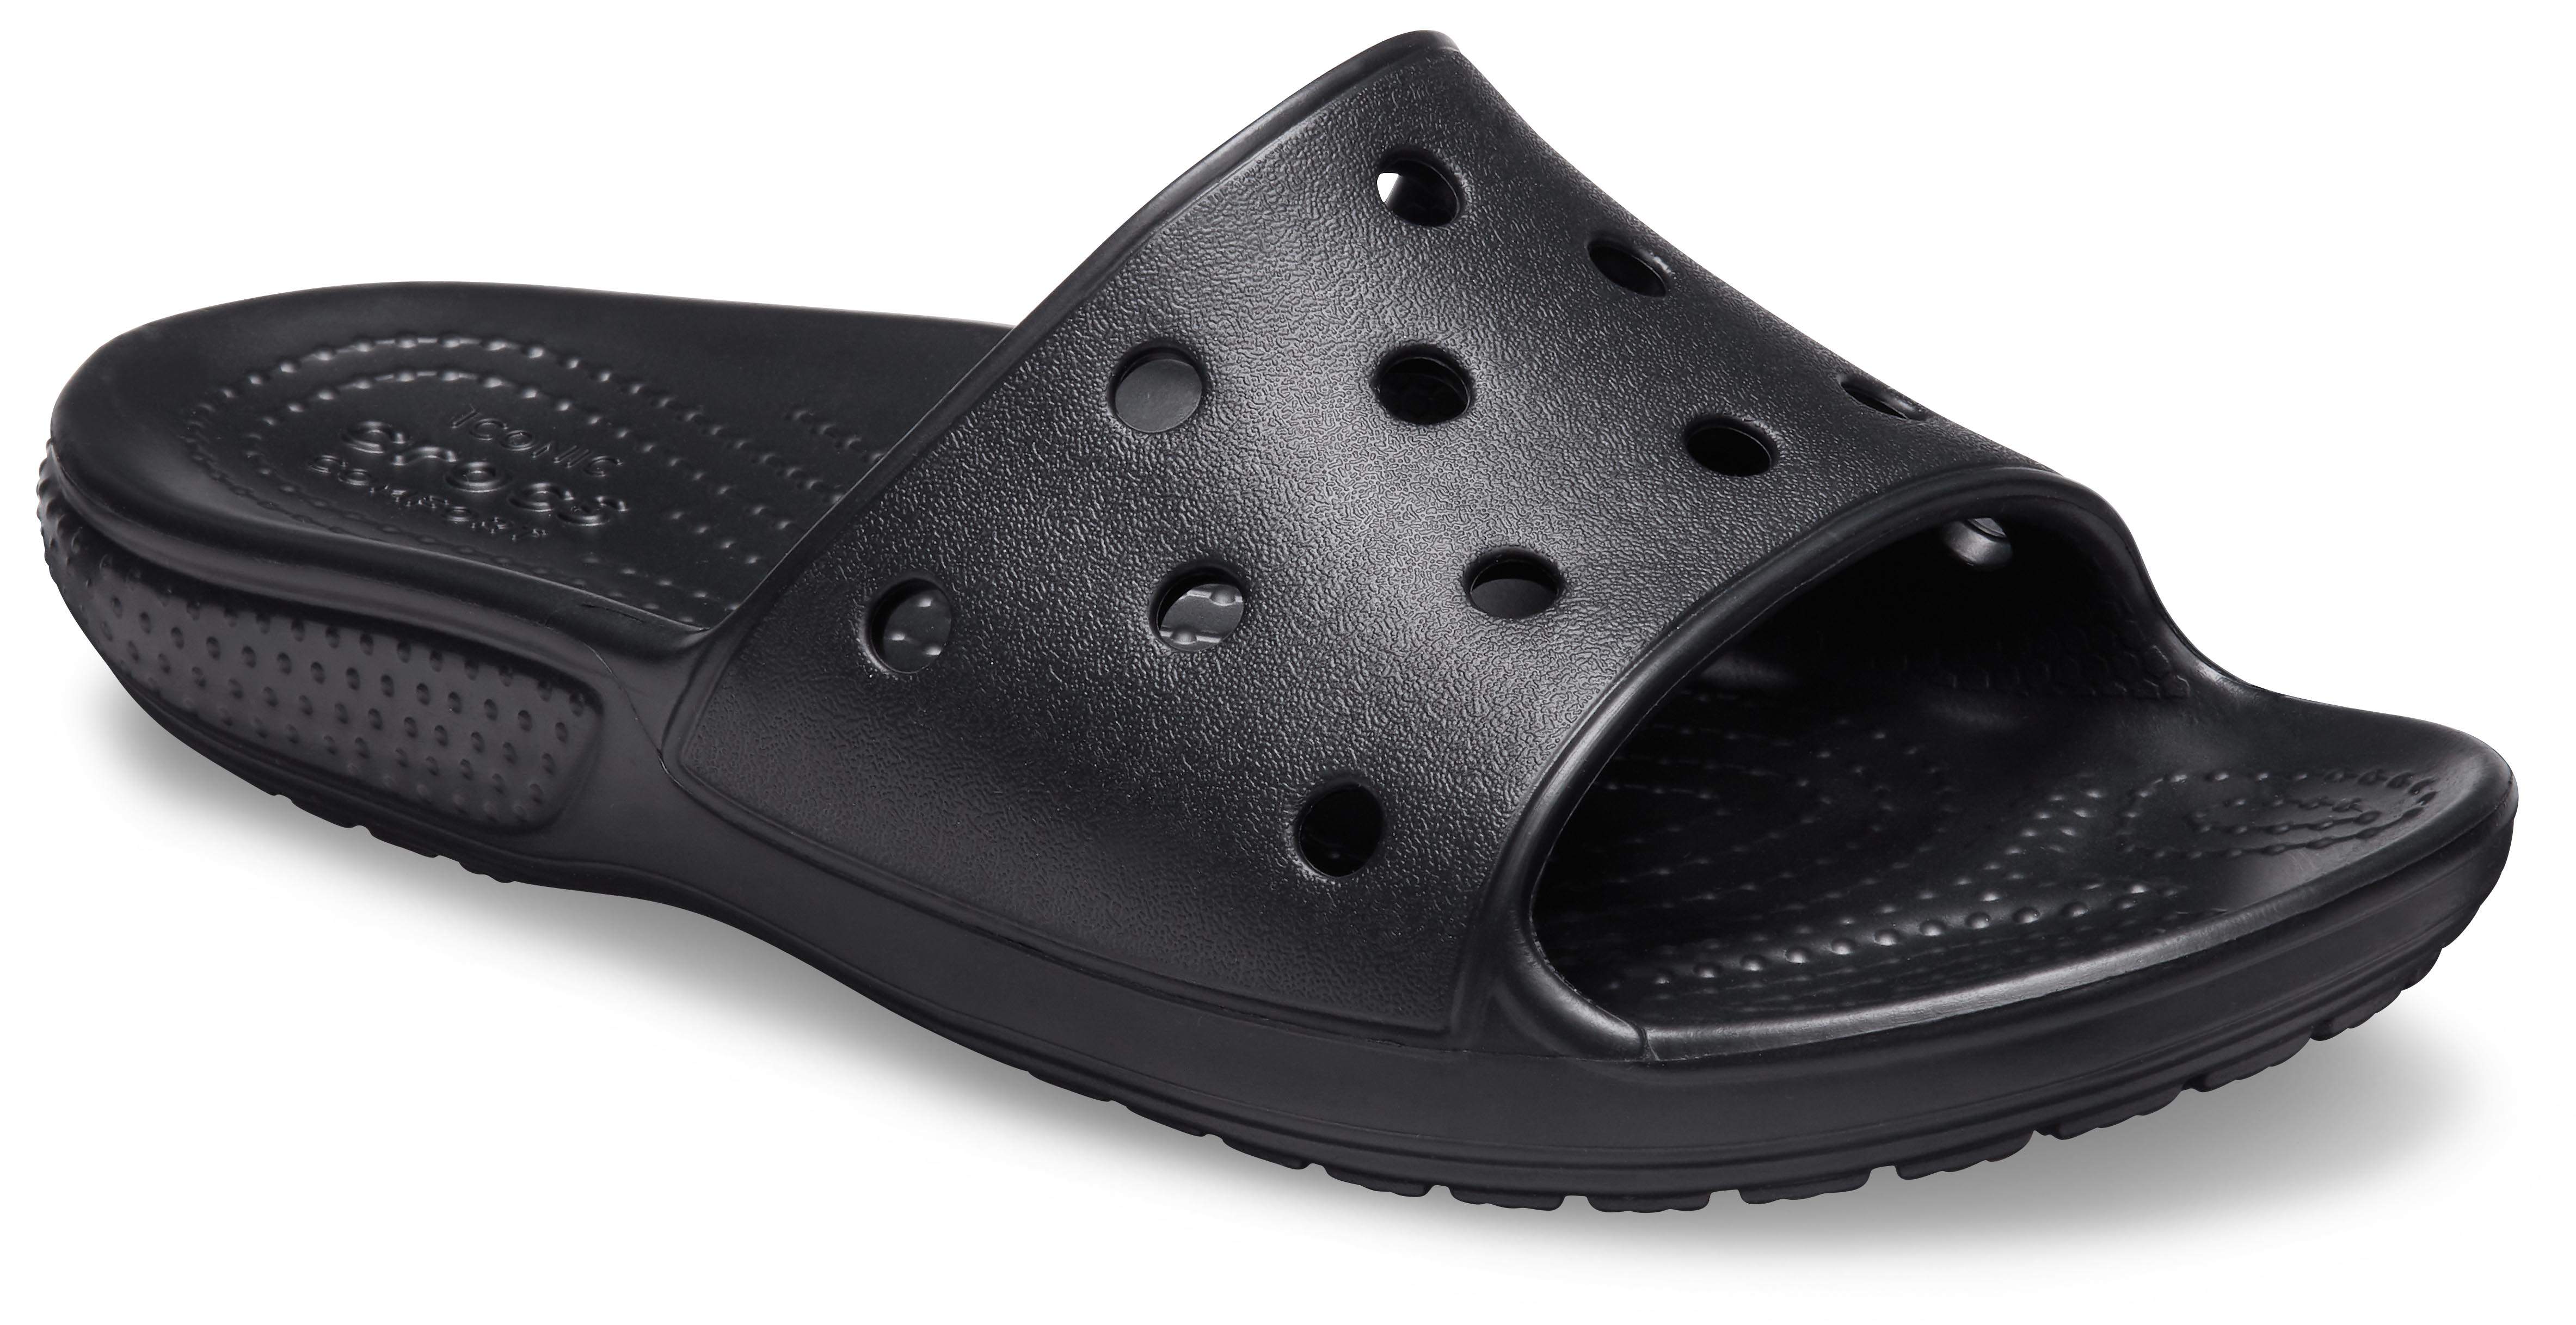 black crocs for kids